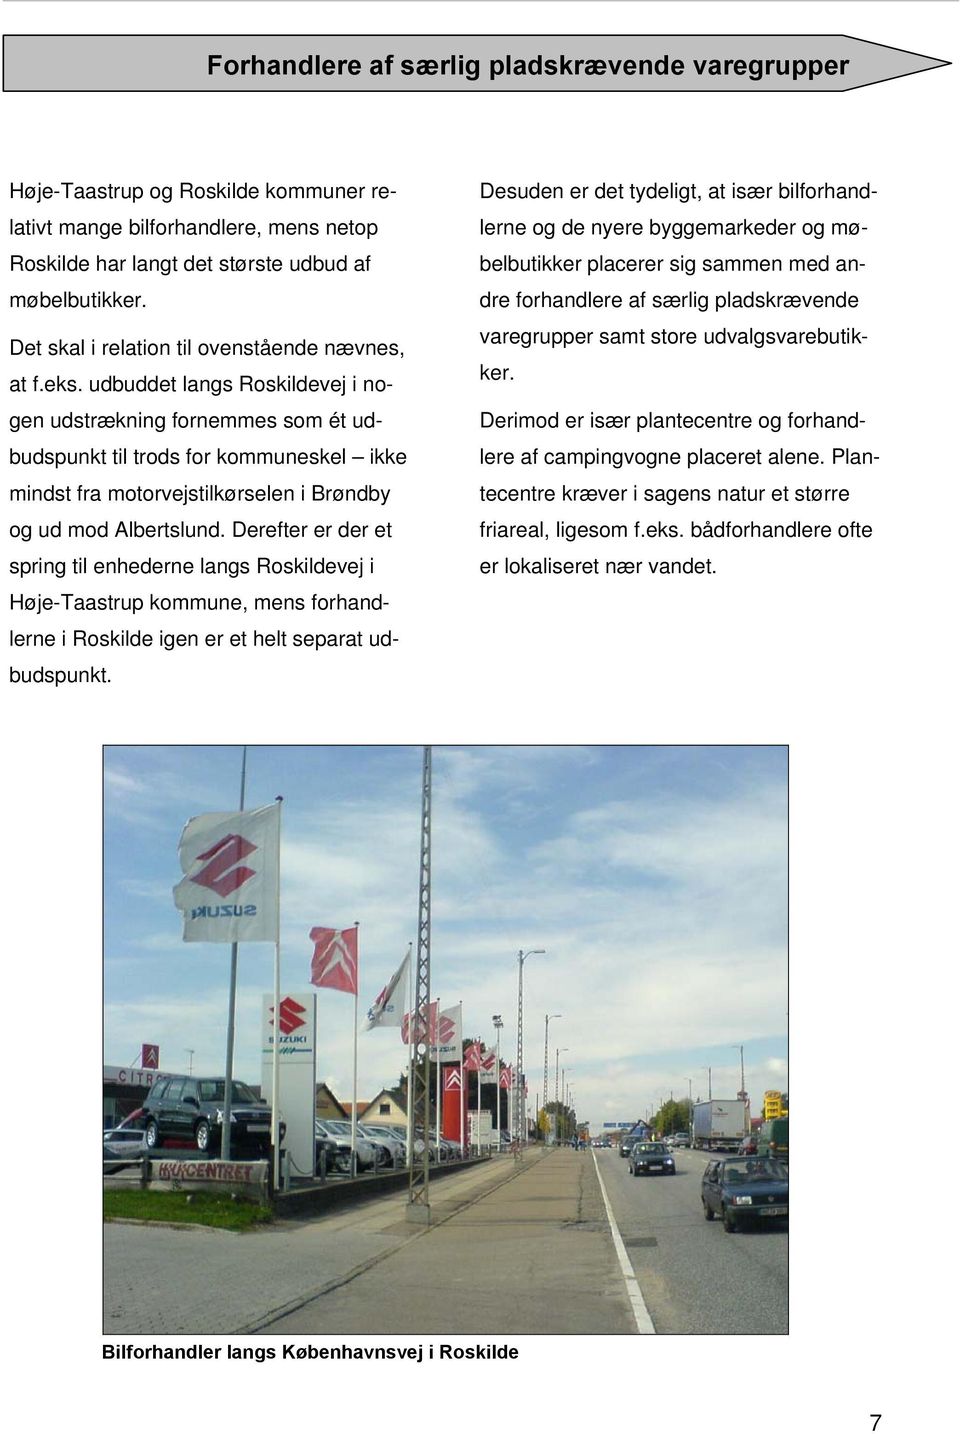 Derefter er der et spring til enhederne langs Roskildevej i Høje-Taastrup kommune, mens forhandlerne i Roskilde igen er et helt separat udbudspunkt.